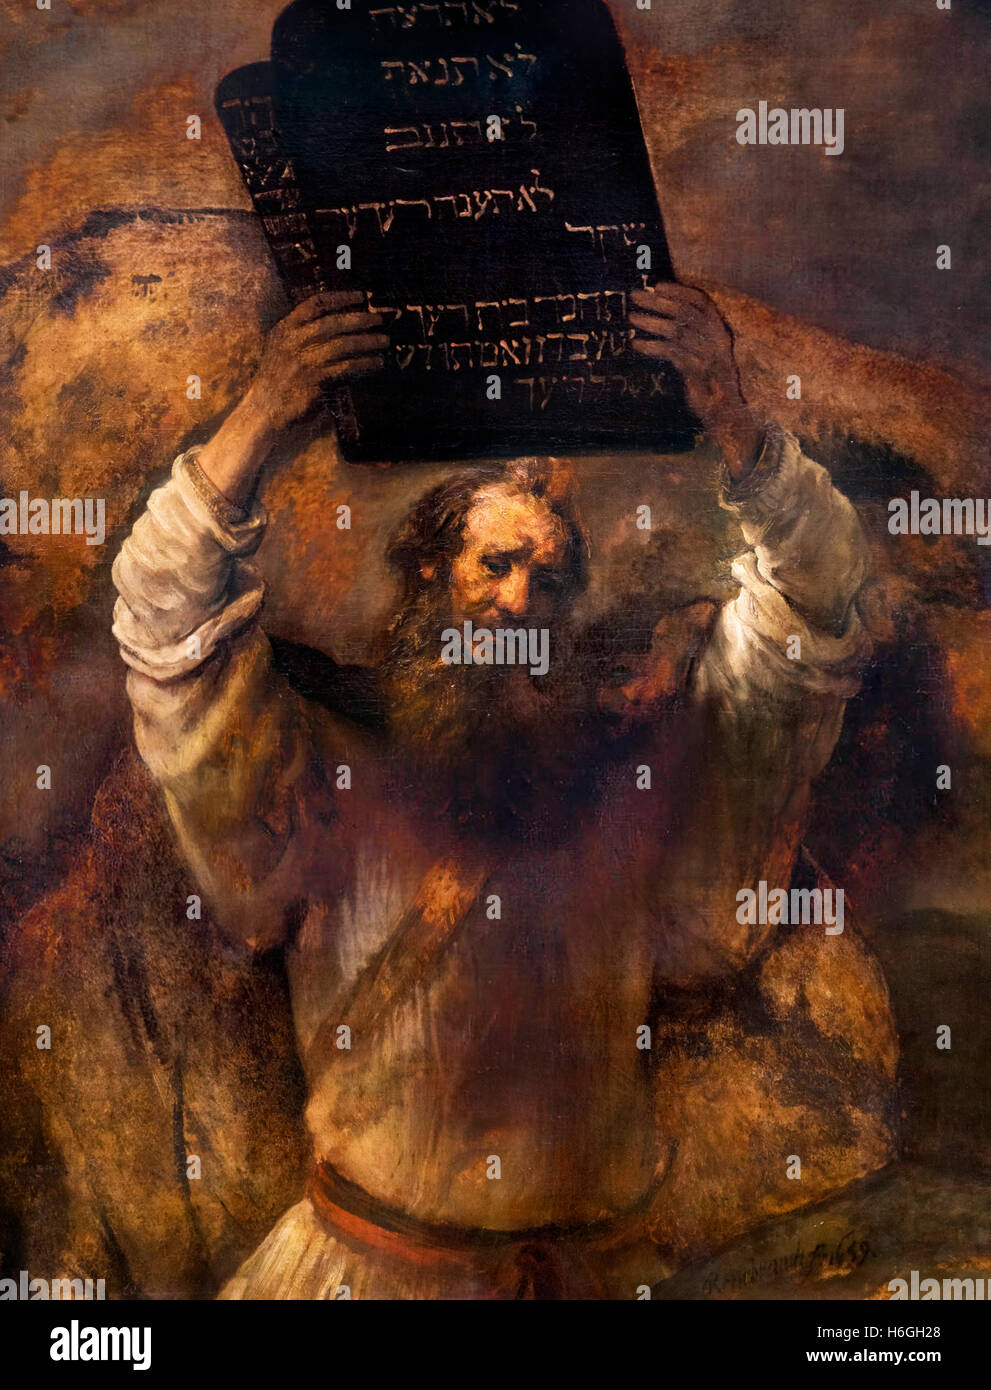 Moïse brisant les tables de la Loi d'après Rembrandt van Rijn, huile sur toile, 1659. Le depicst peinture Moïse brisant les tables de la loi sur lequel Dieu a écrit les Dix Commandements. Banque D'Images